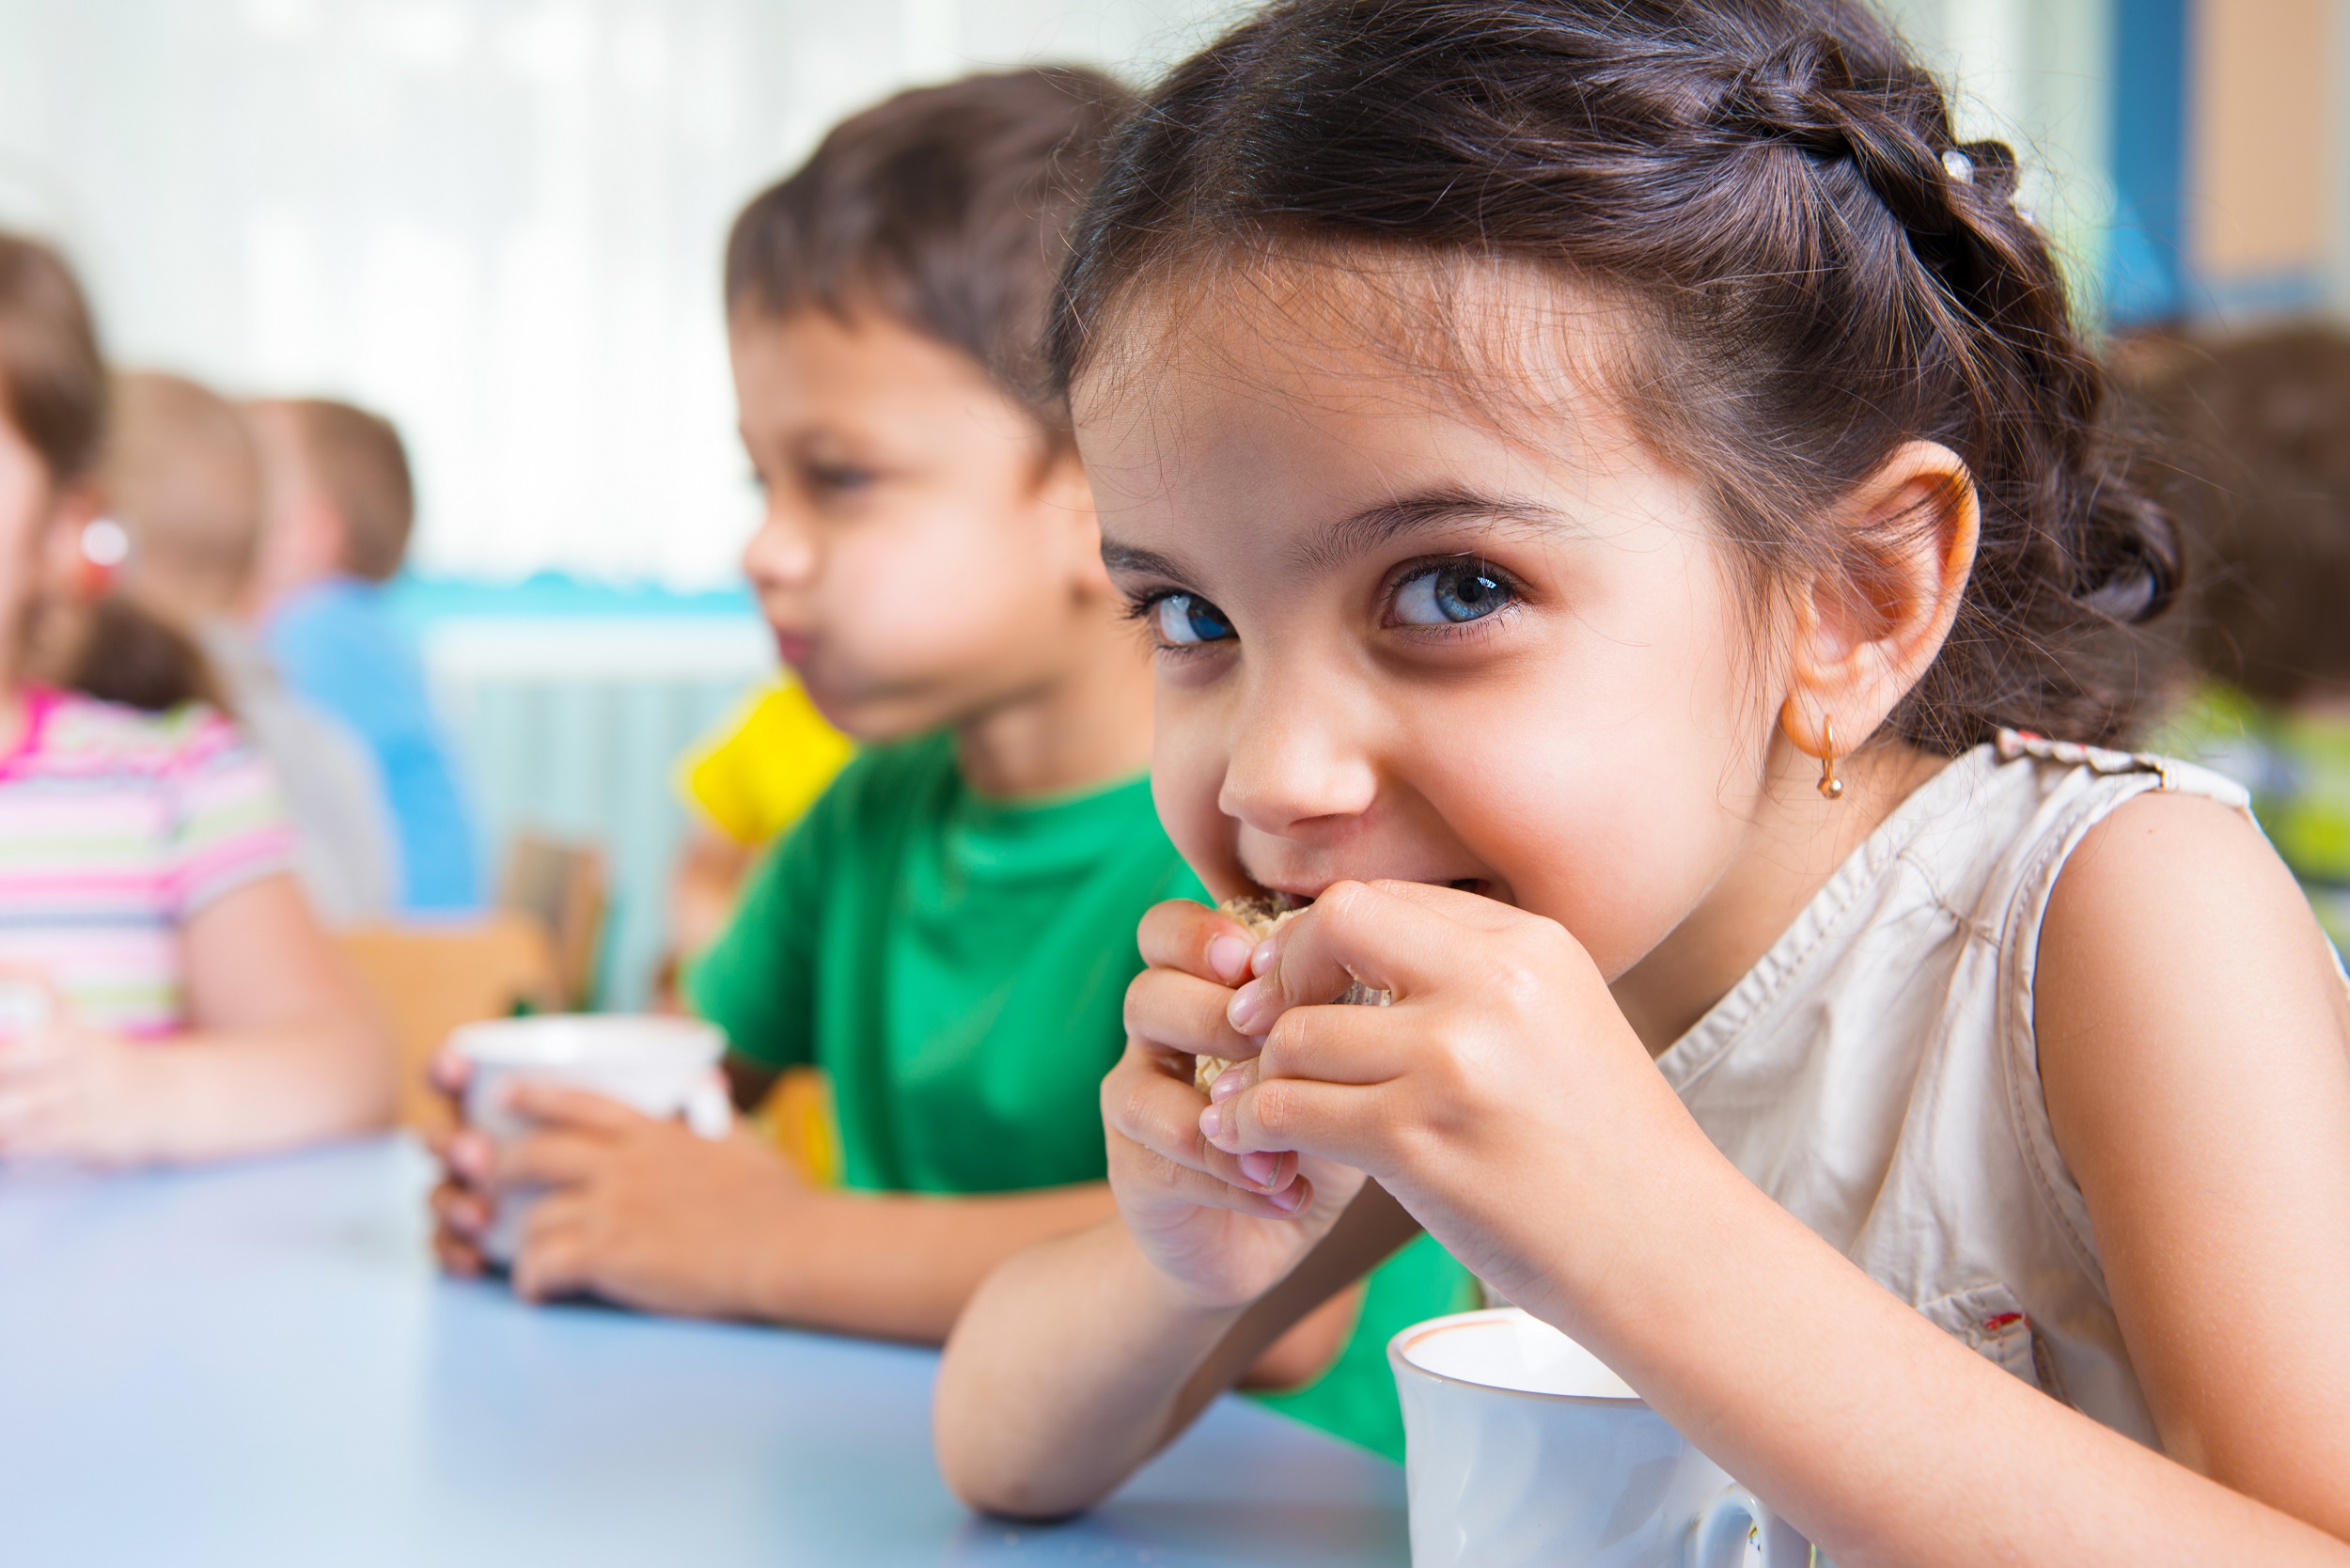 Az pişen ette böbrek yetmezliği riski; çocukları daha fazla etkiliyor